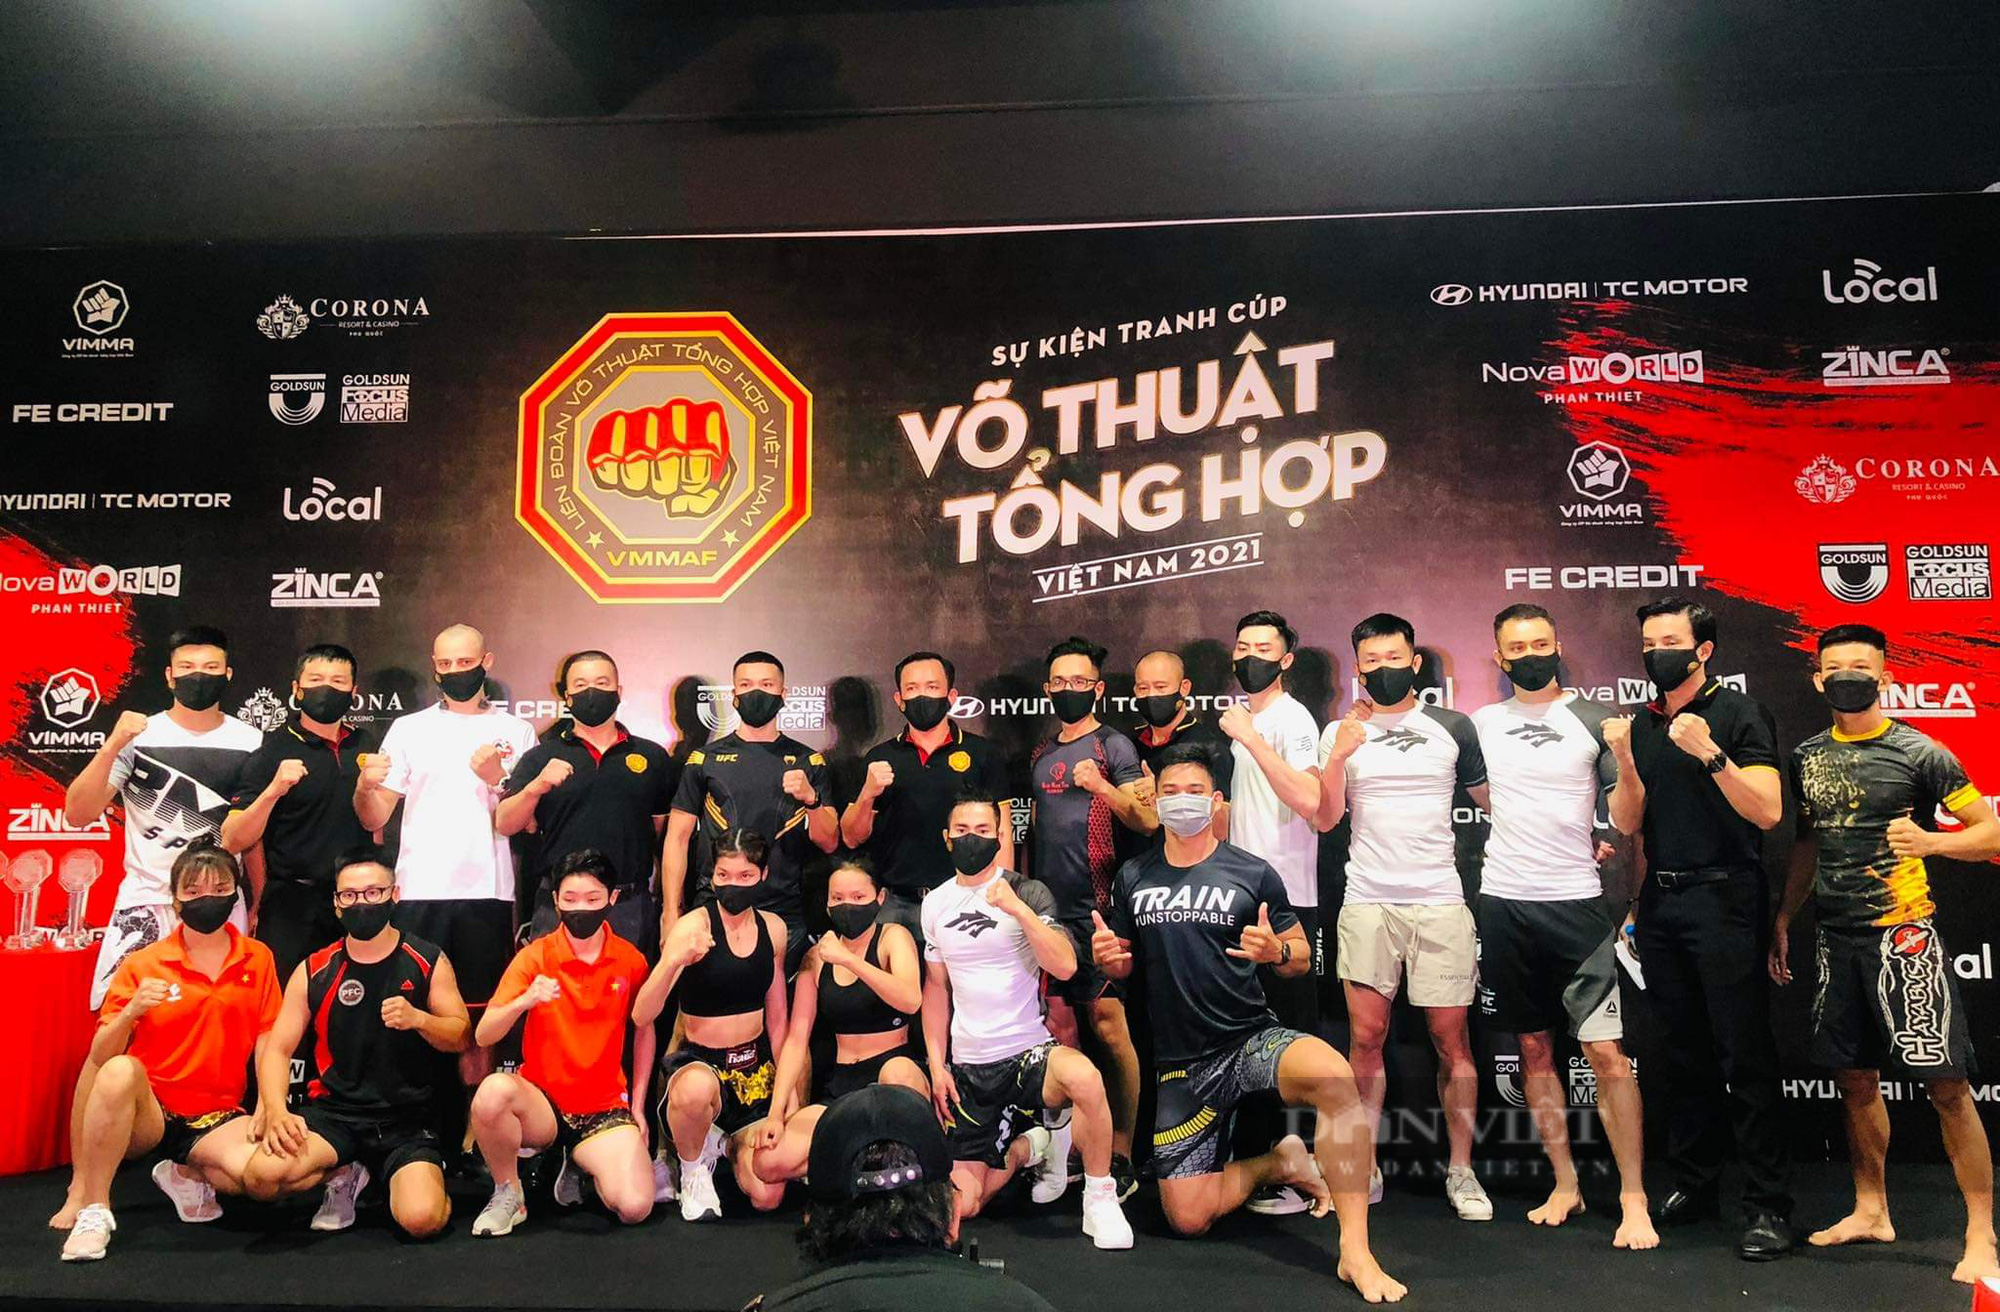 Sắp diễn ra giải đấu võ thuật tổng hợp MMA đầu tiên tại Việt Nam - Ảnh 6.